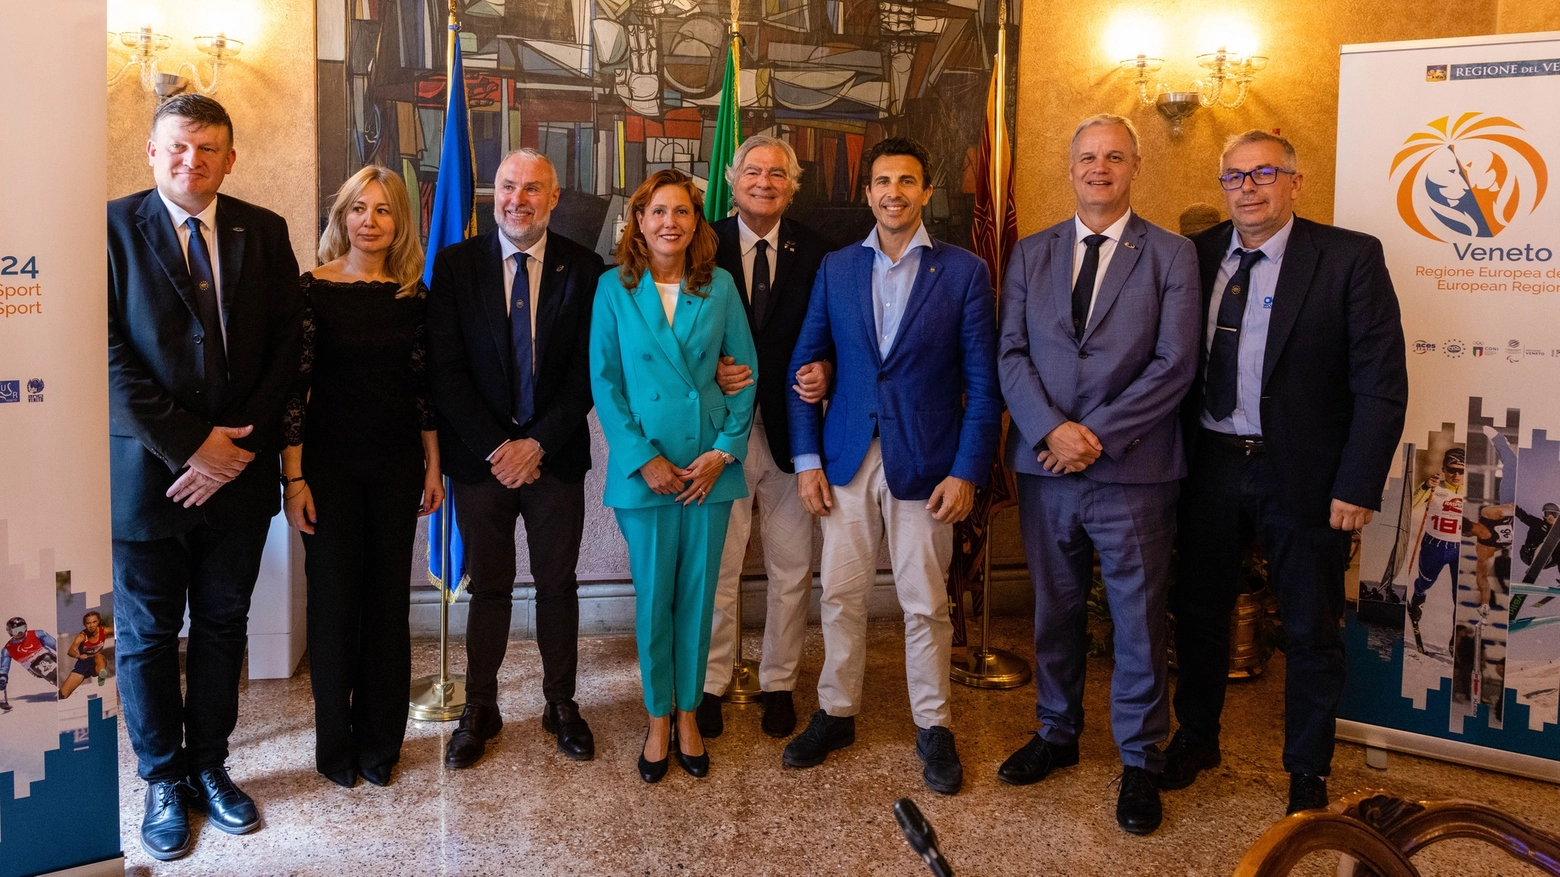 Le autorità con l'assessore Corazzari alla presentazione della candidatura del Veneto Regione Europea dello Sport 2024